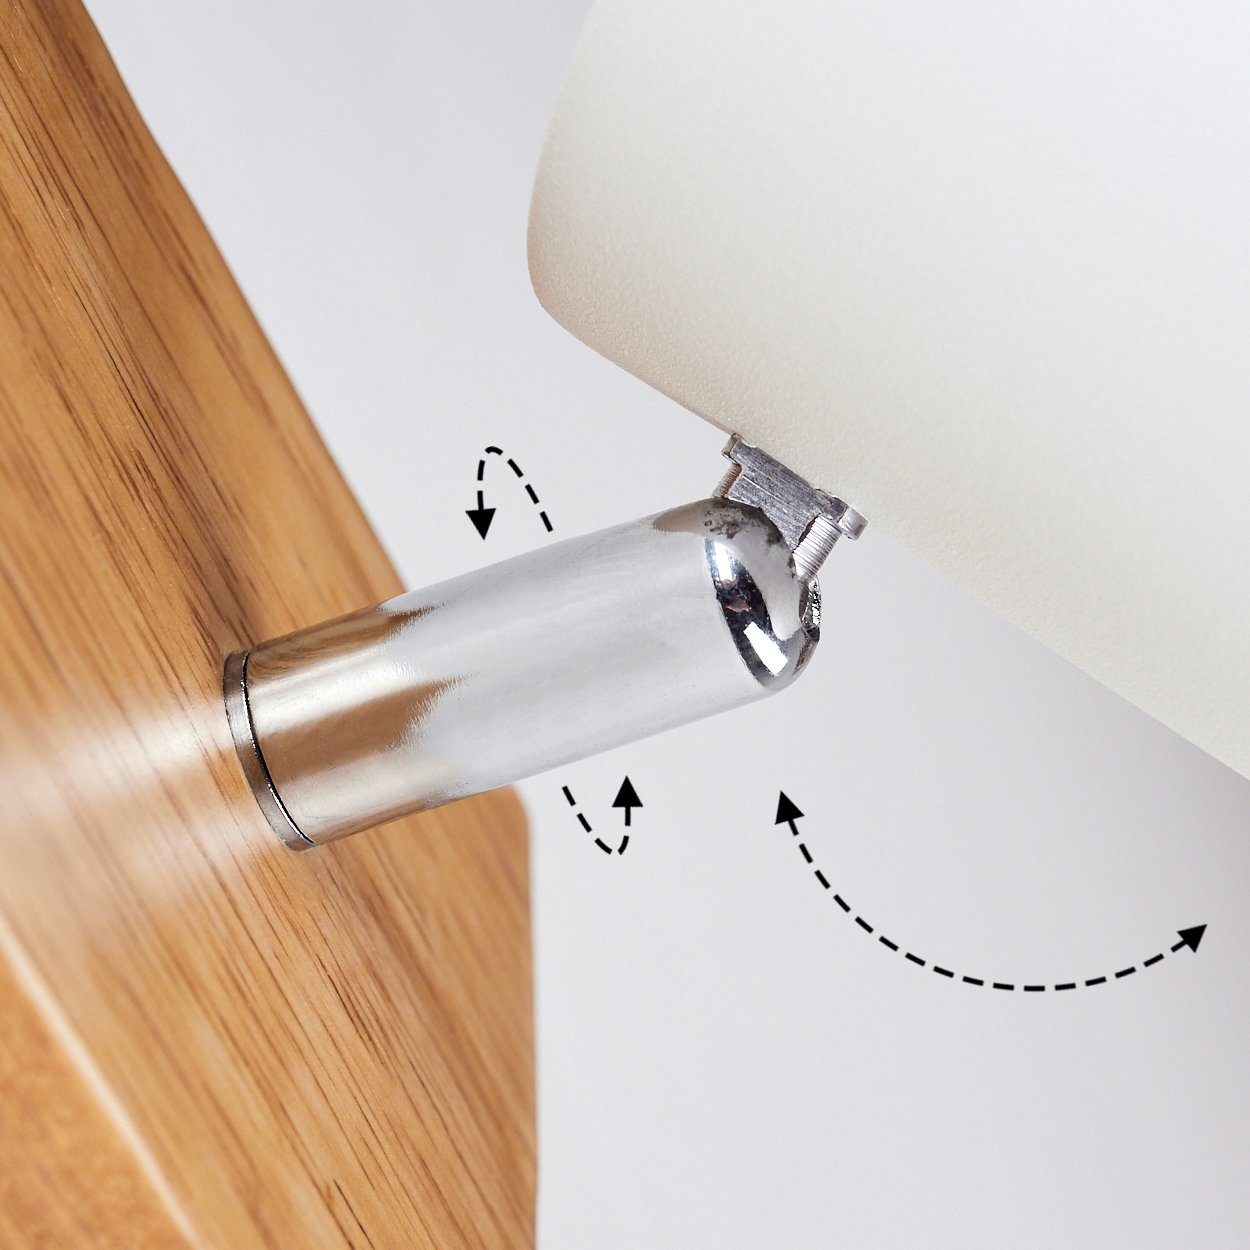 »Godo« in Leuchtenkopf GU10 ohne ist hofstein Holz, Zimmerlampe, aus Deckenleuchte weiß Metall und dreh-/schwenkbar, Leuchtmittel, Wandlampe